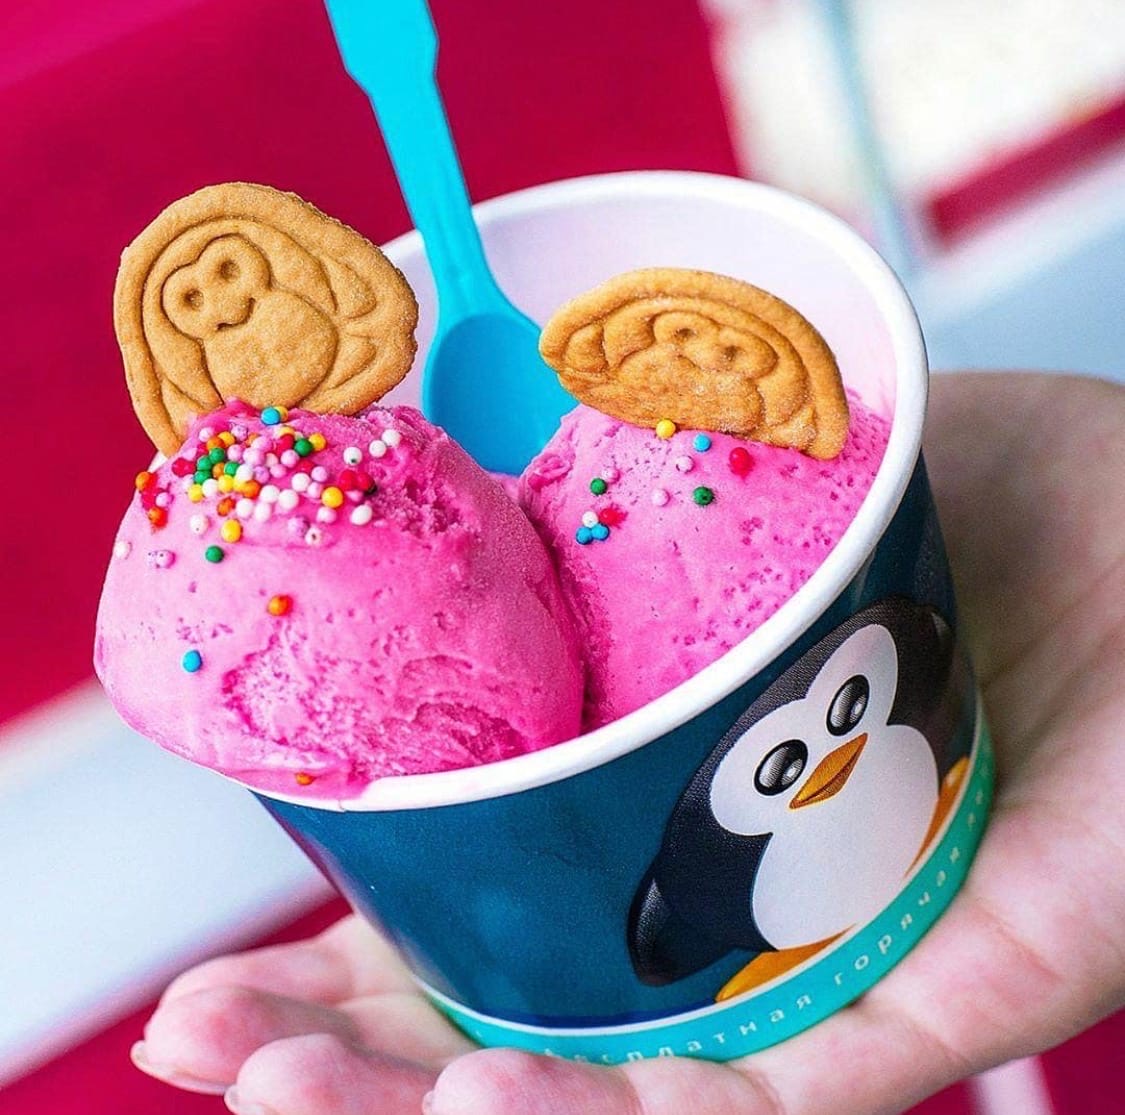 Сбор до 15.10 Самое вкусное и натуральное мороженое на сливочках 33 пингви**на! Только у нас есть Серия веганского мороженого без молока!Изысканные Пирожные,Маффины!Впервые акция 3+1!